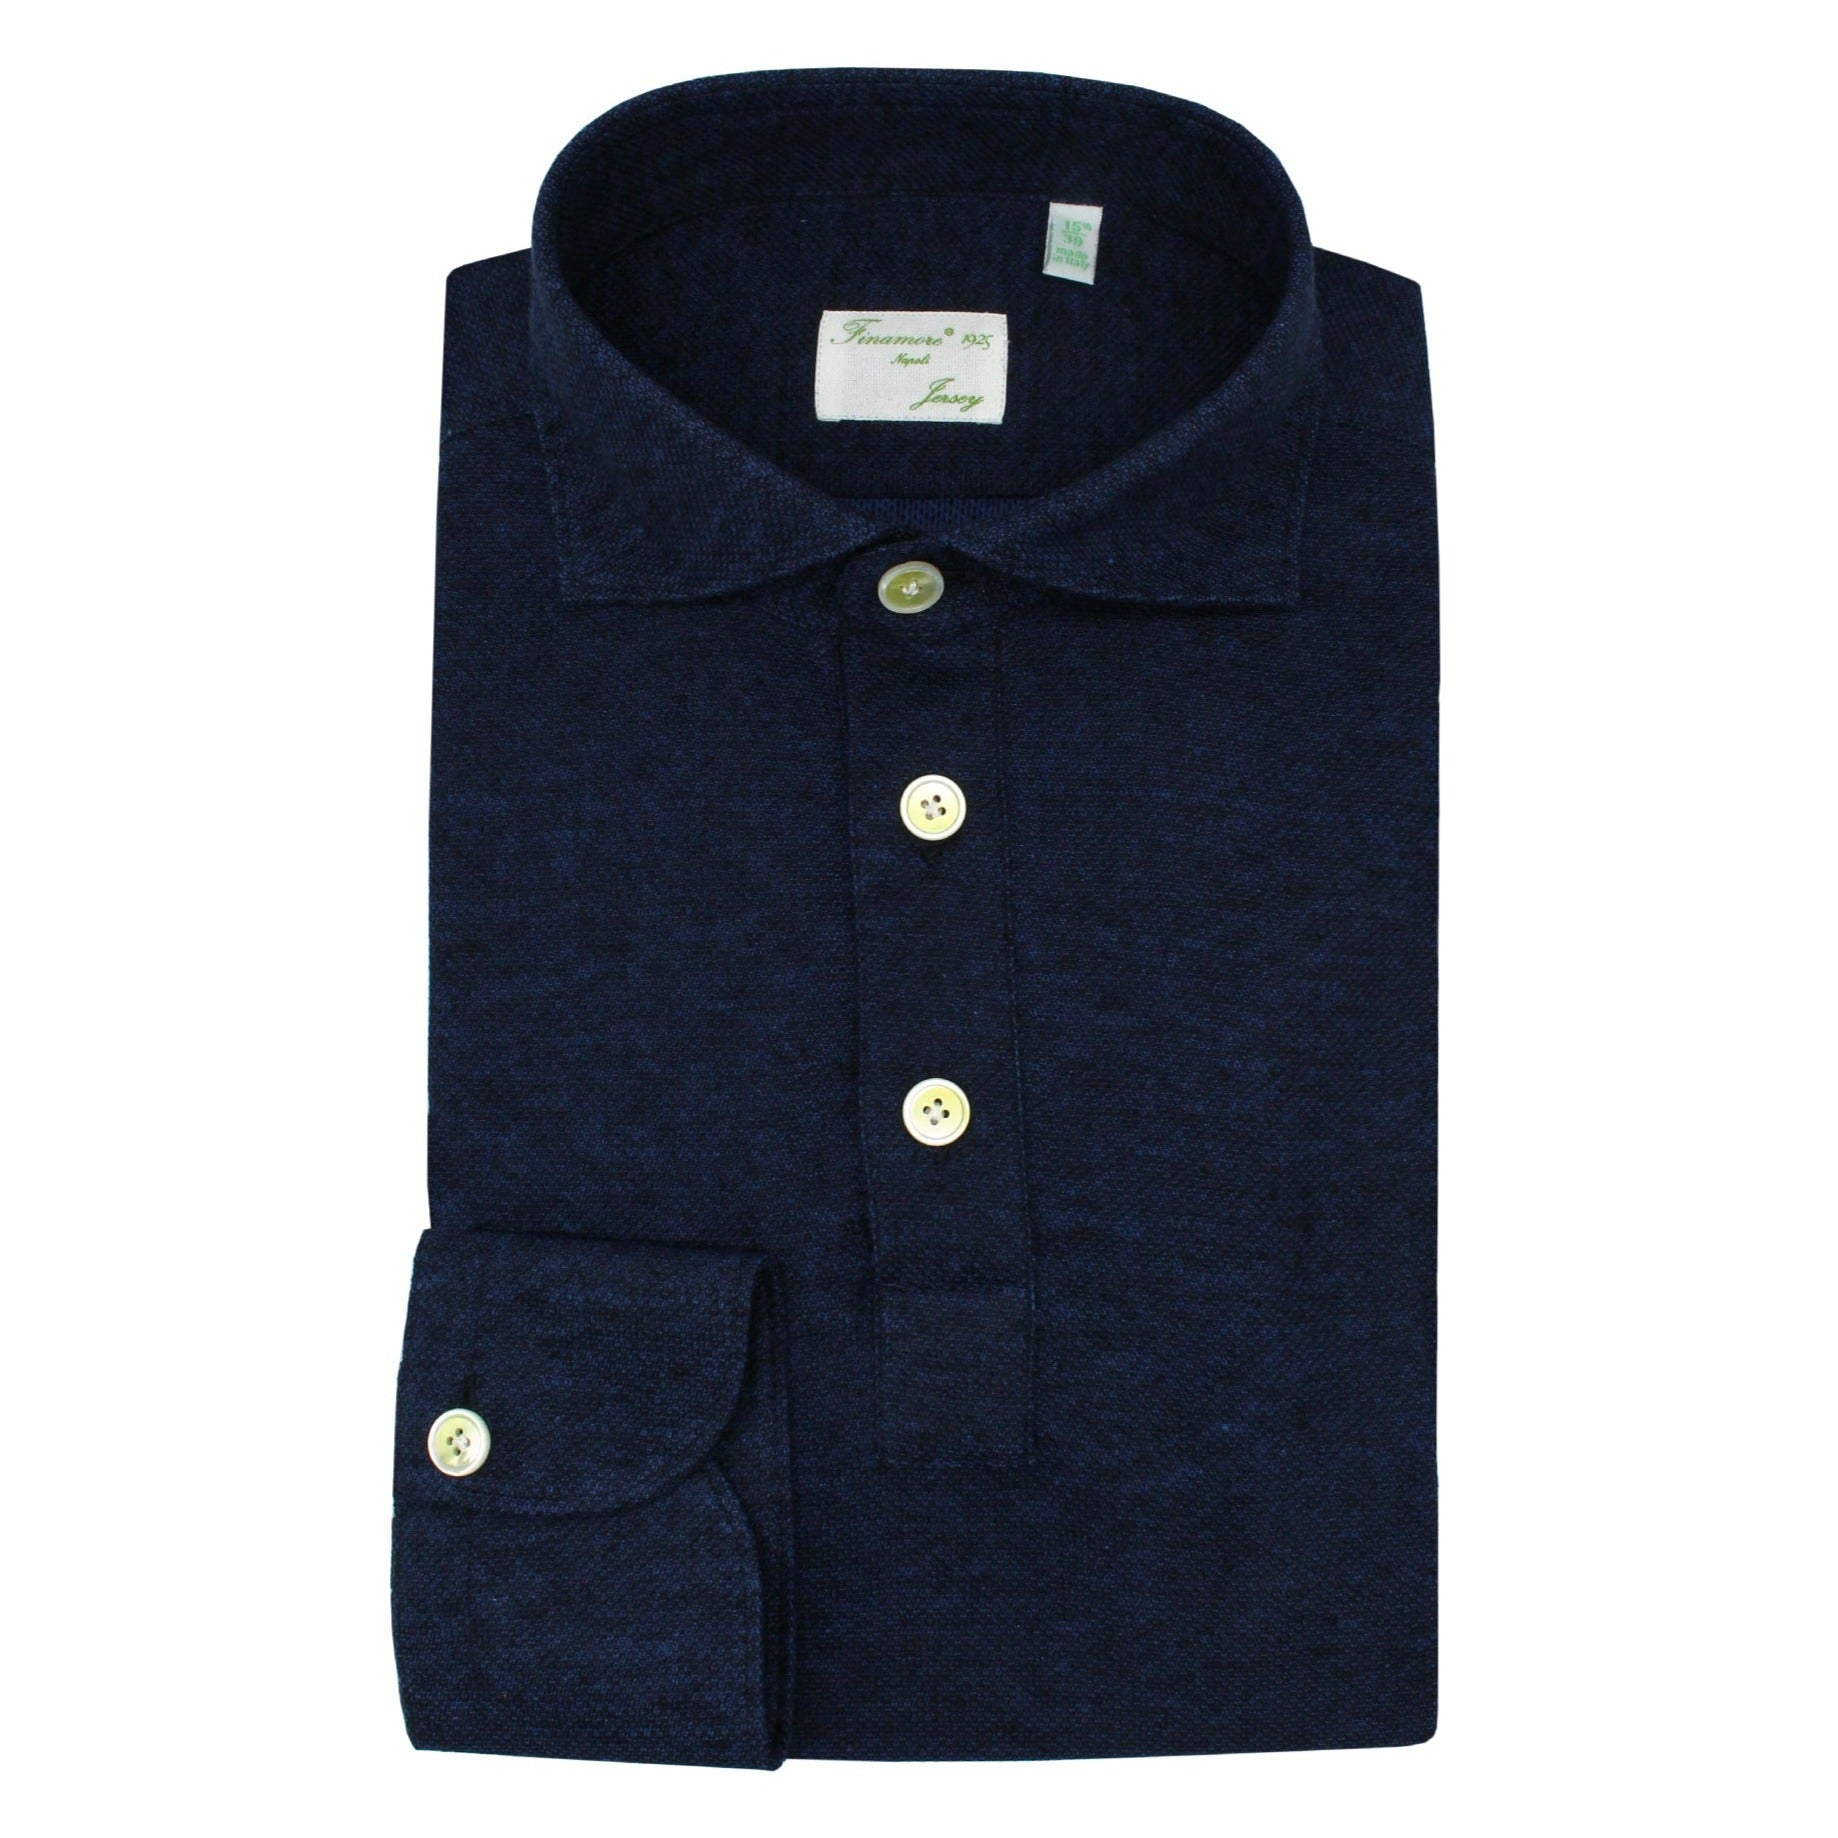 Orlando blu polo shirt in cotton and linen